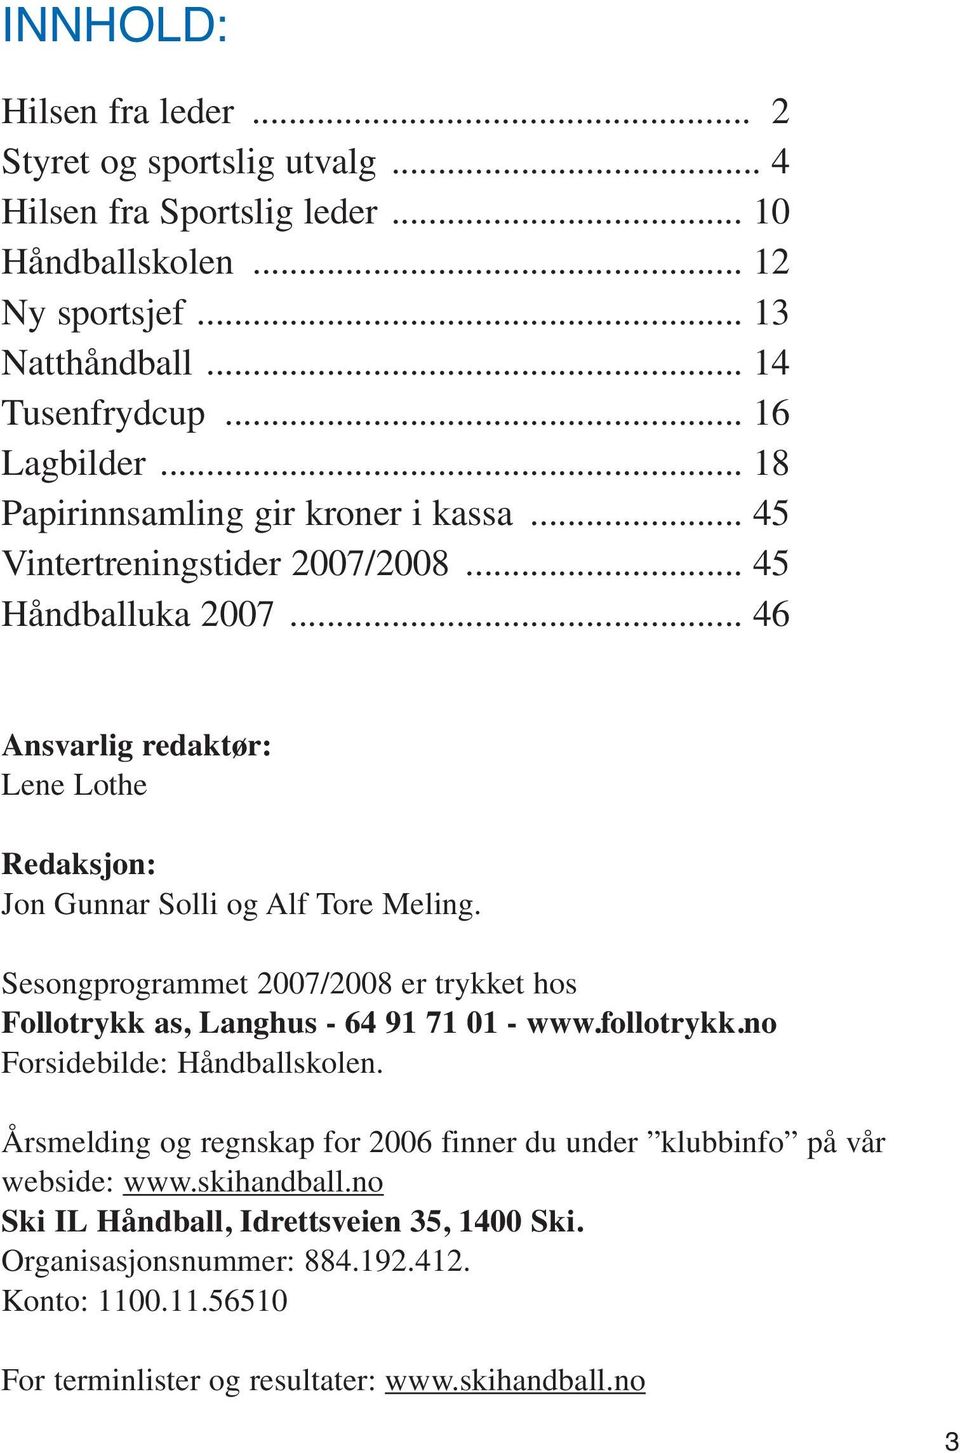 Sesongprogrammet 2007/2008 er trykket hos Follotrykk as, Langhus - 64 91 71 01 - www.follotrykk.no Forsidebilde: Håndballskolen.